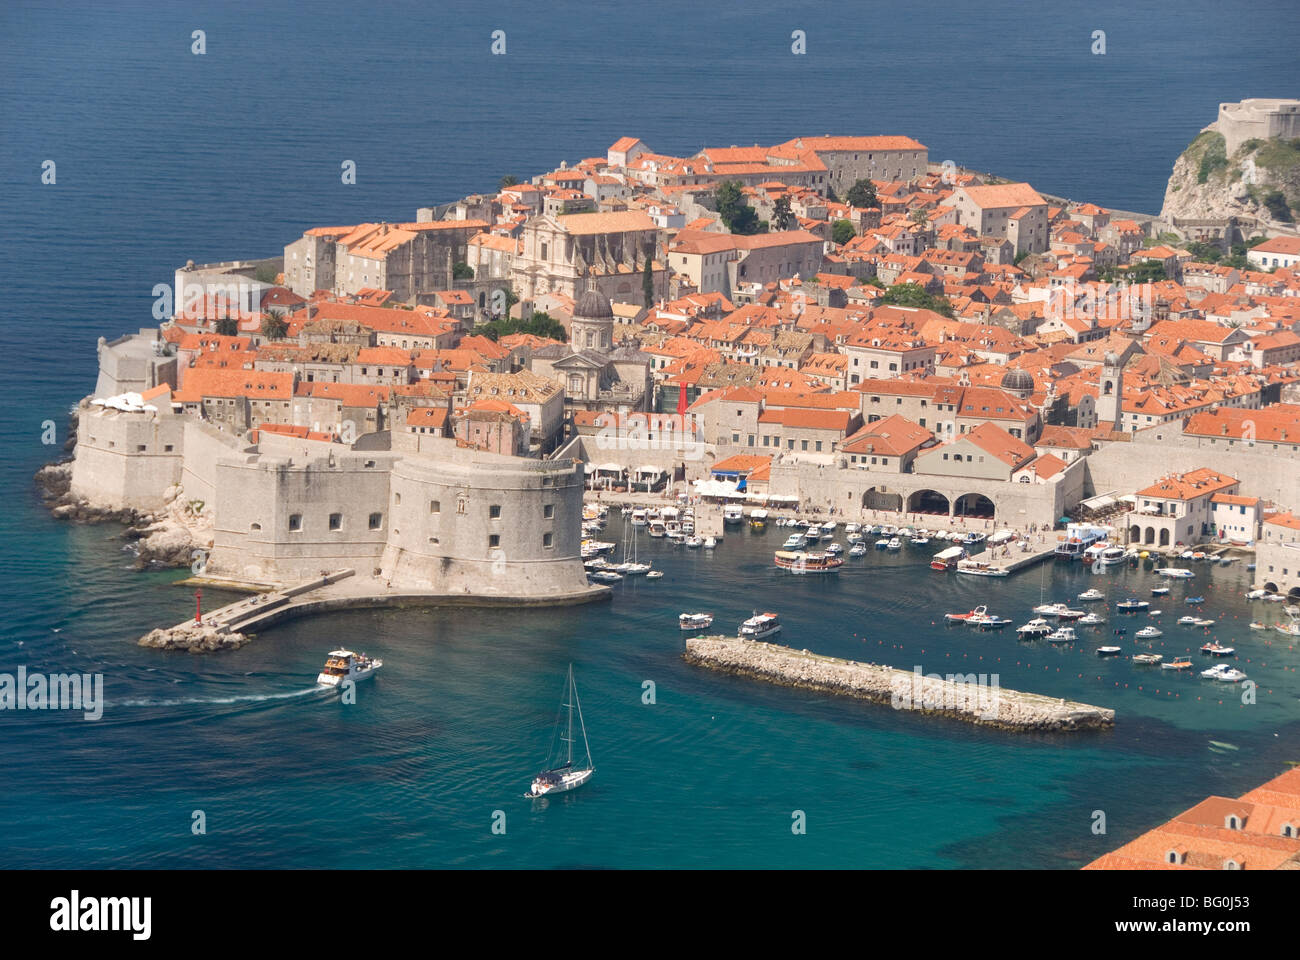 Vieille Ville et le Vieux Port, Site du patrimoine mondial de l'UNESCO, vue depuis les collines au sud-est, Dubrovnik, Croatie, Europe Banque D'Images